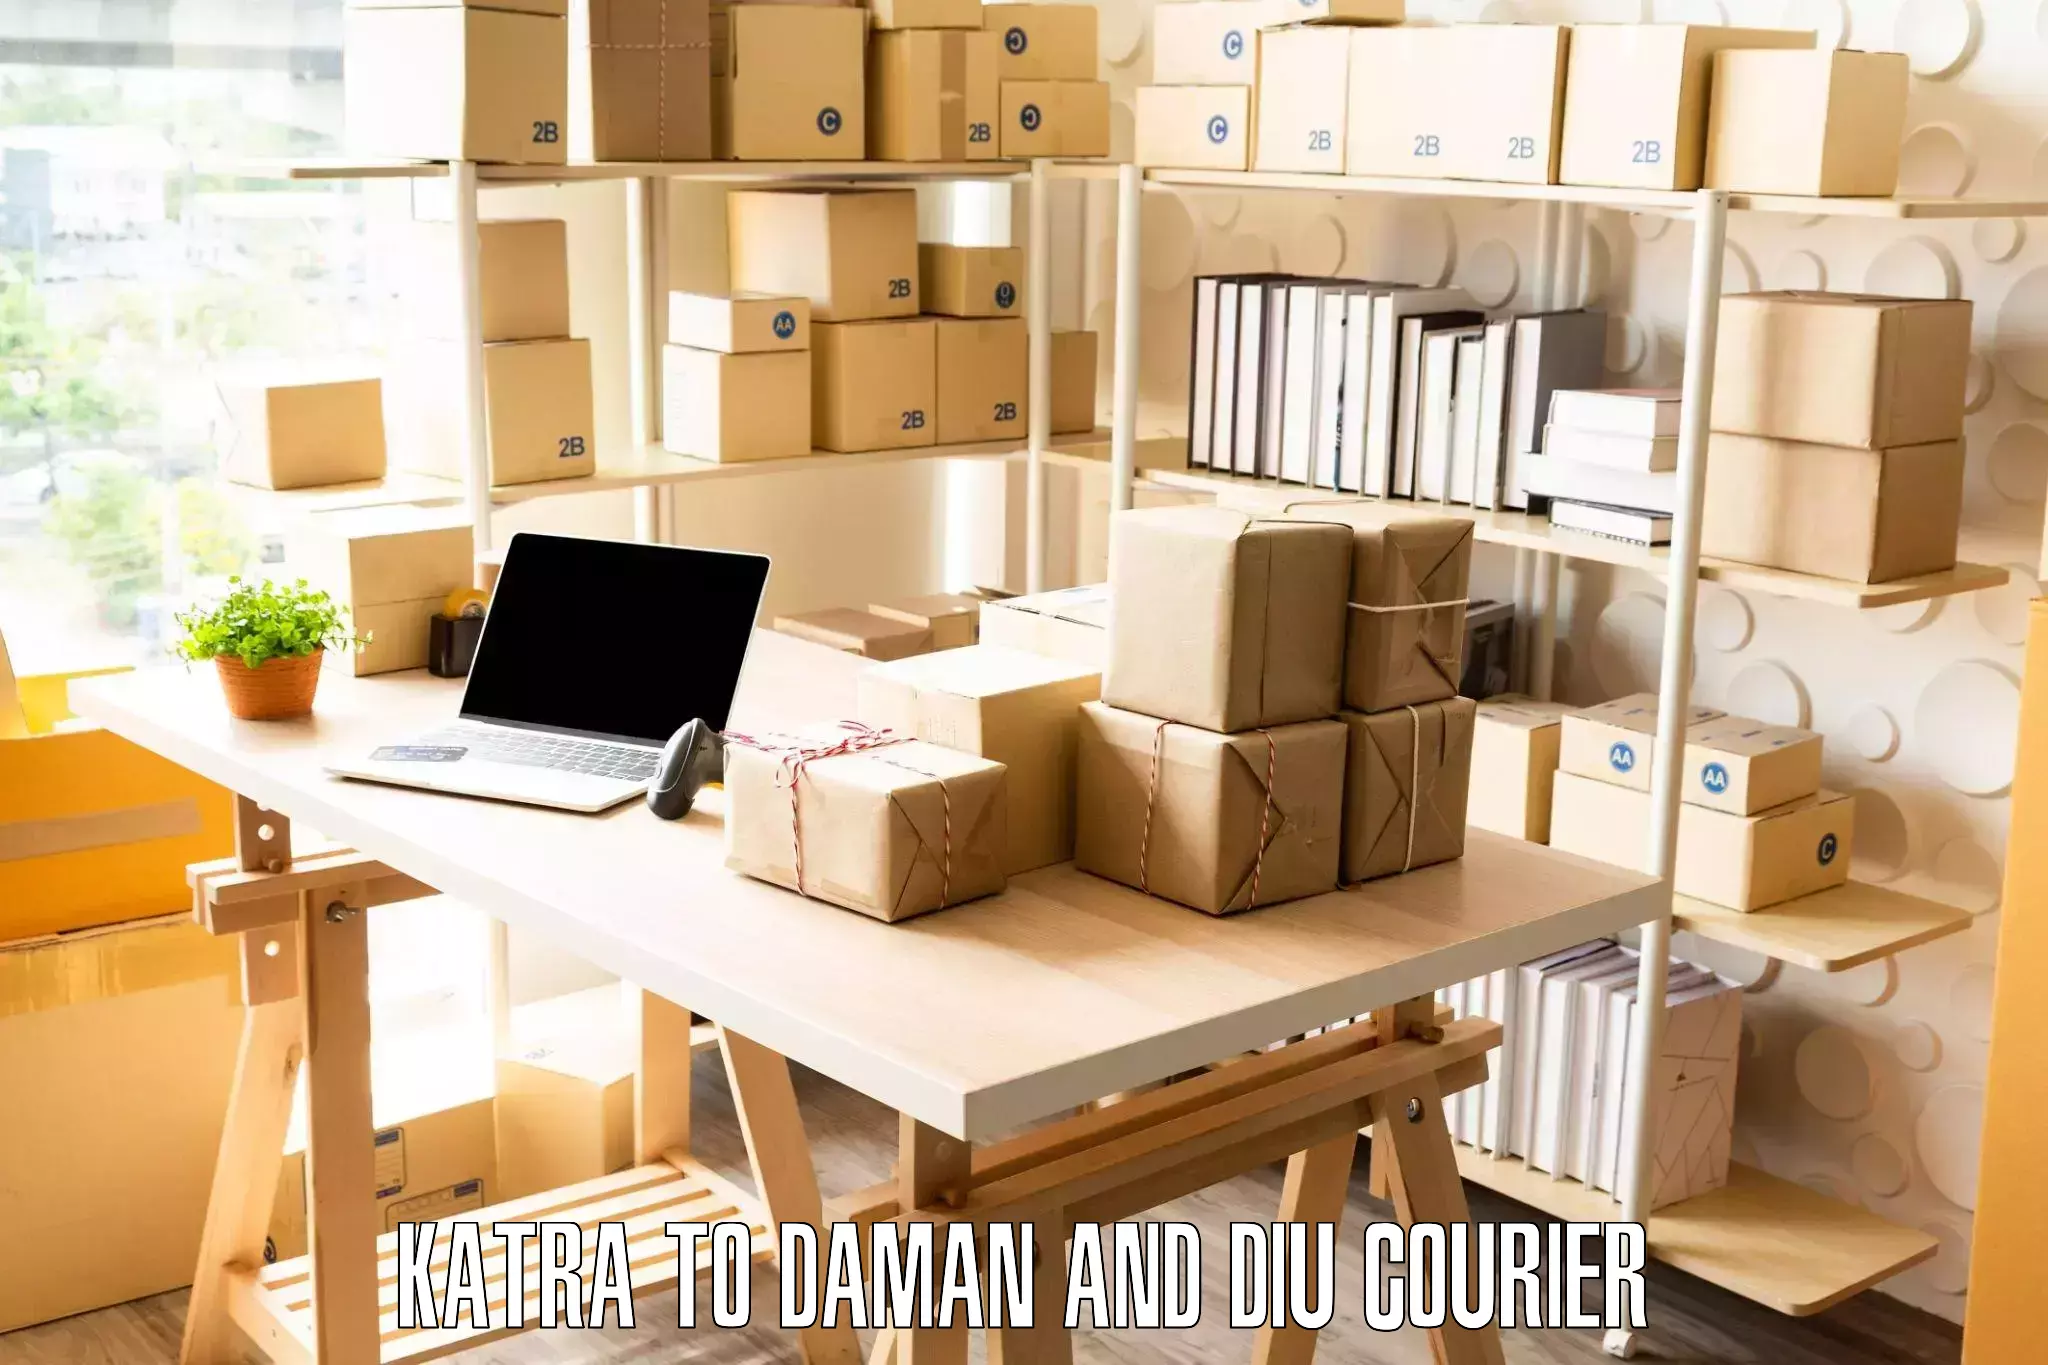 Furniture moving service Katra to Daman